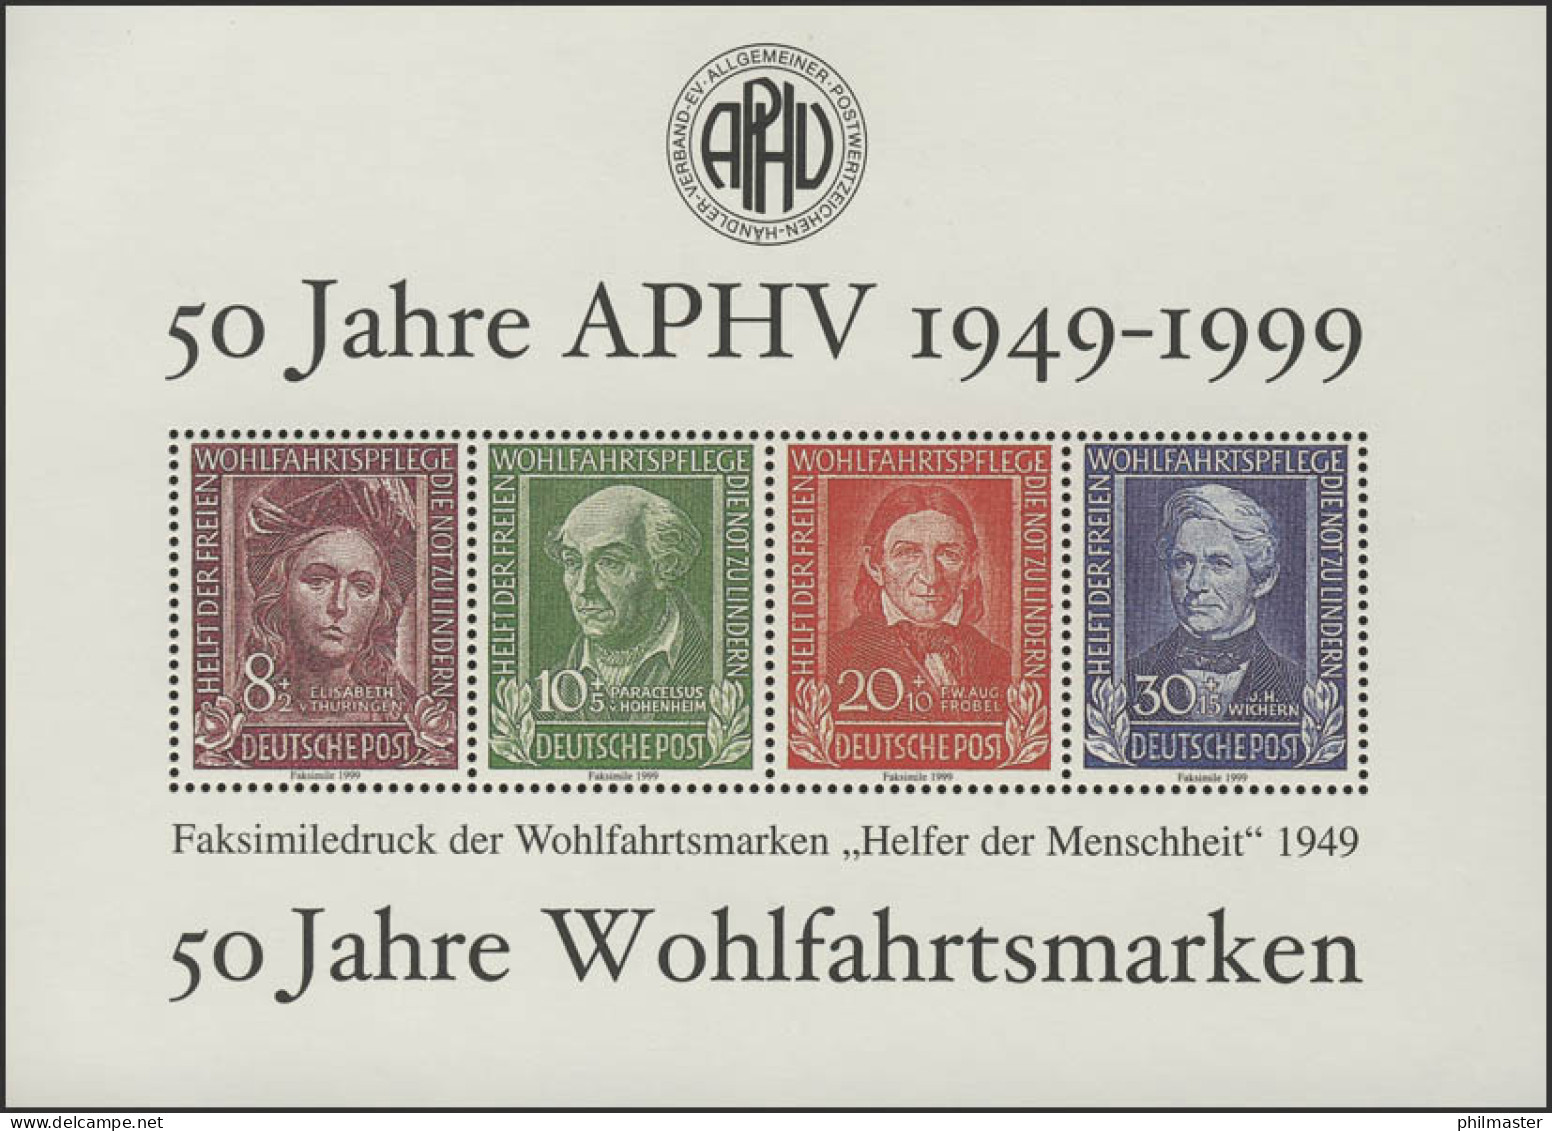 APHV-Sonderdruck 50 Jahre Wohlfahrtsmarken 1999 - Privatpost